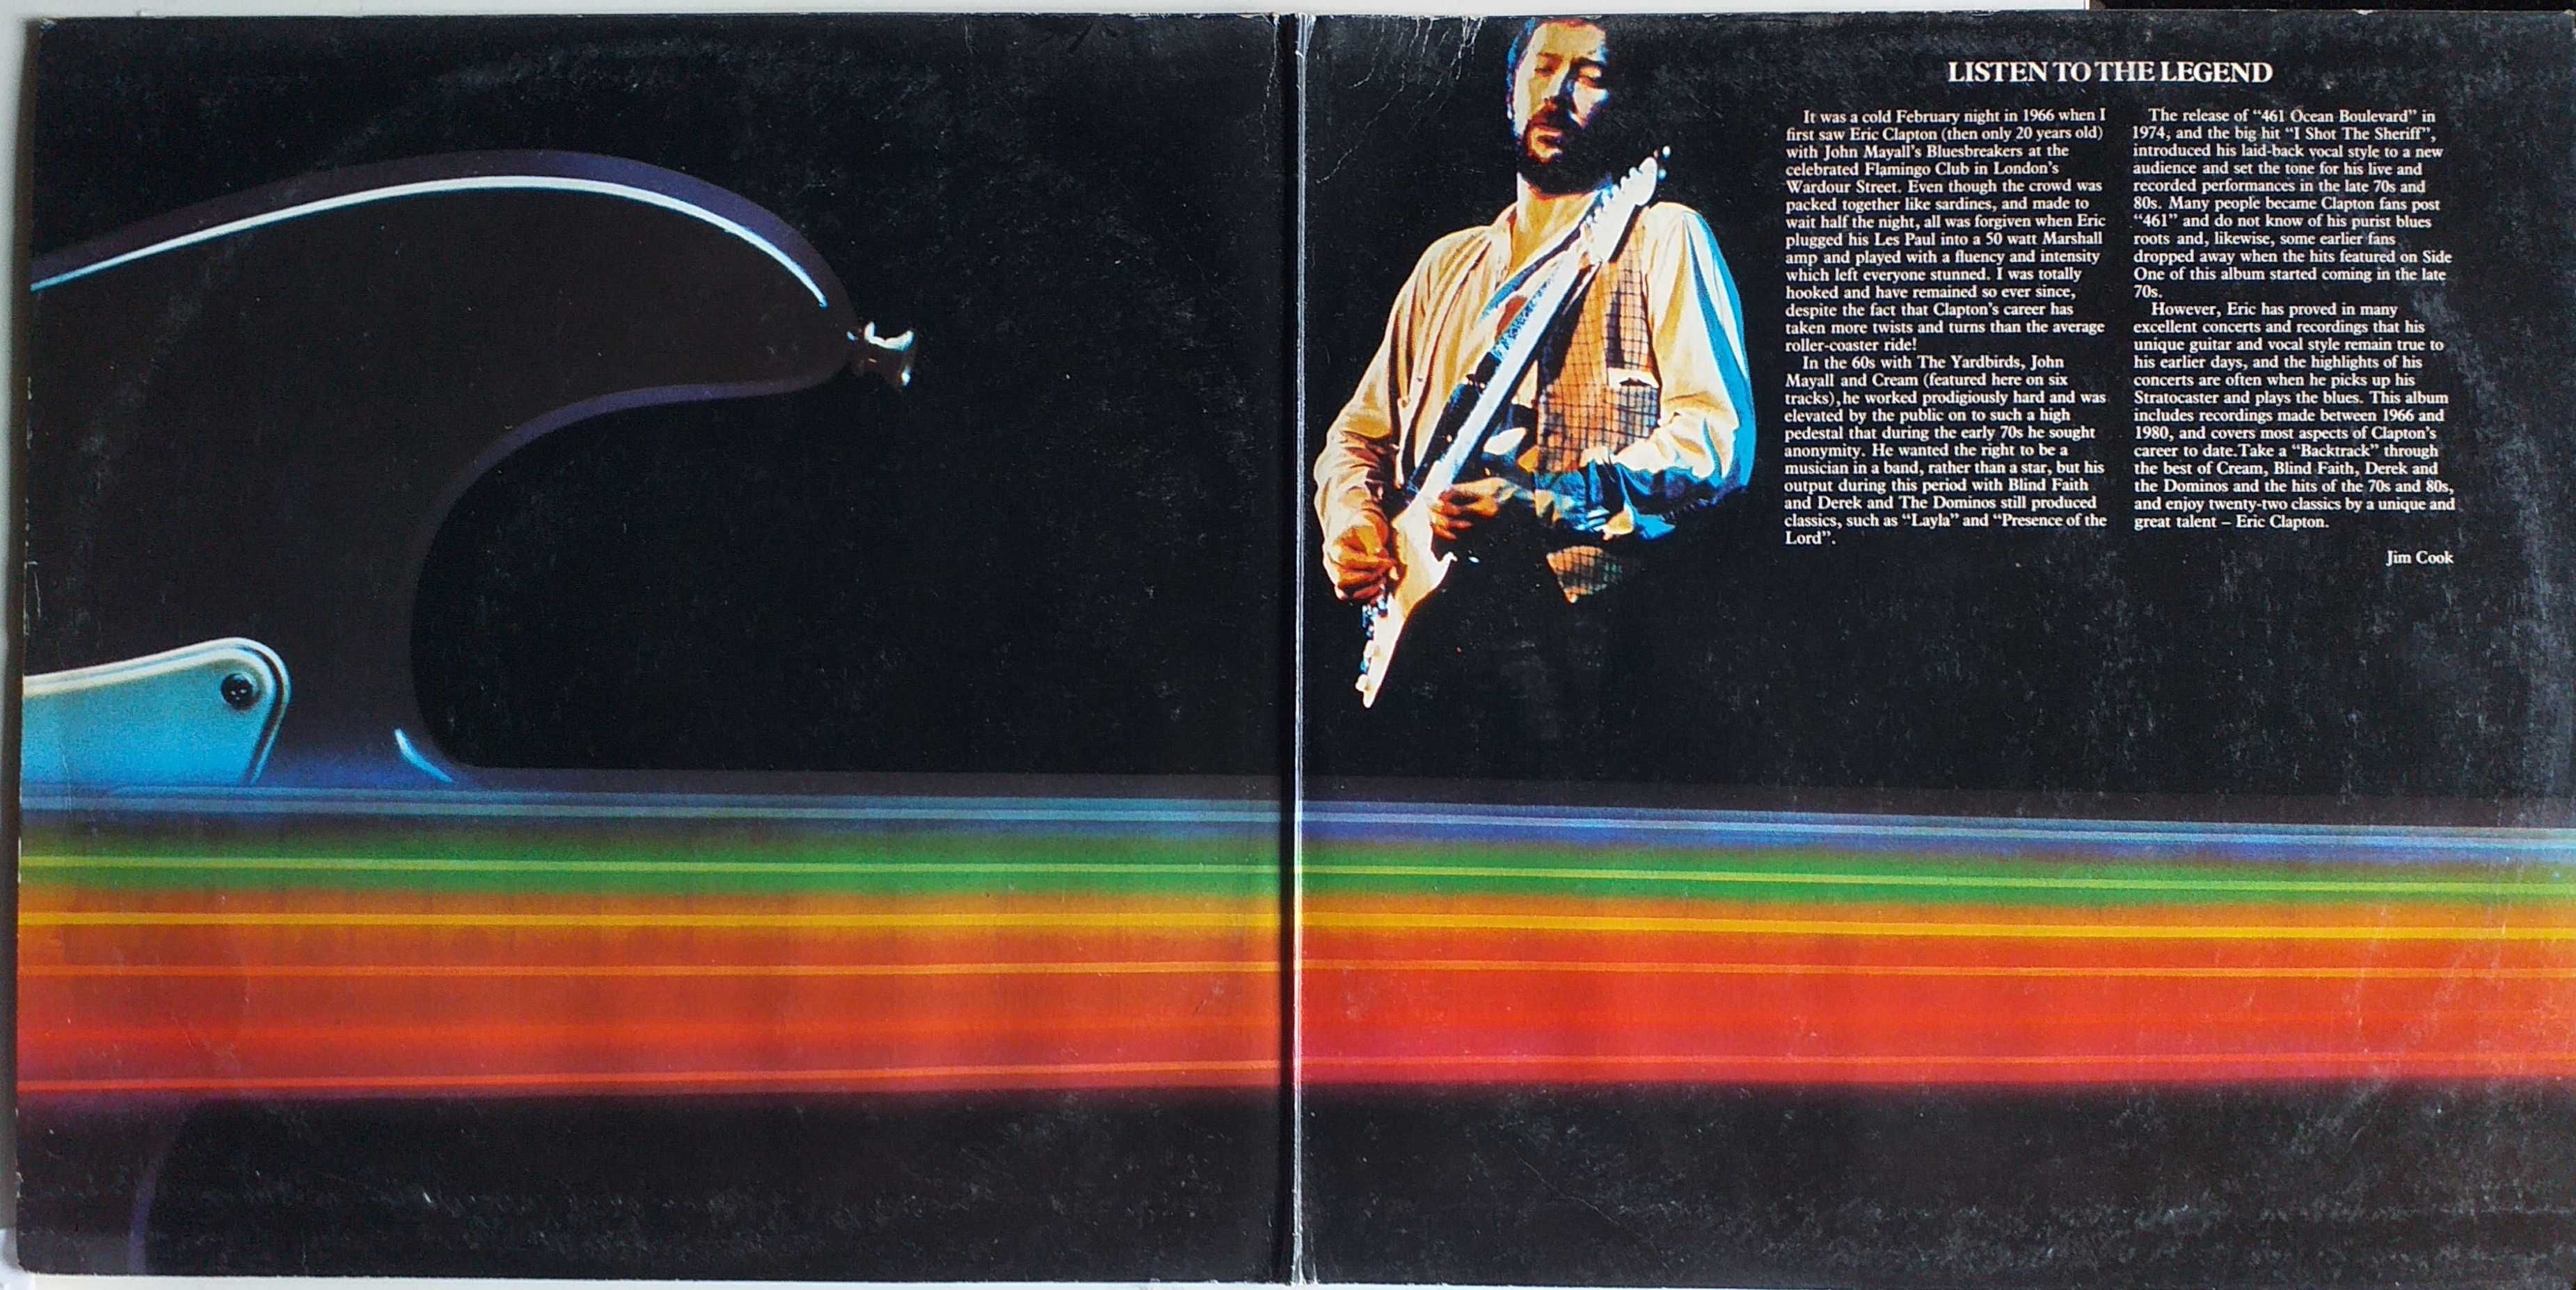 Eric Clapton Backtrackin Vinil LP Duplo